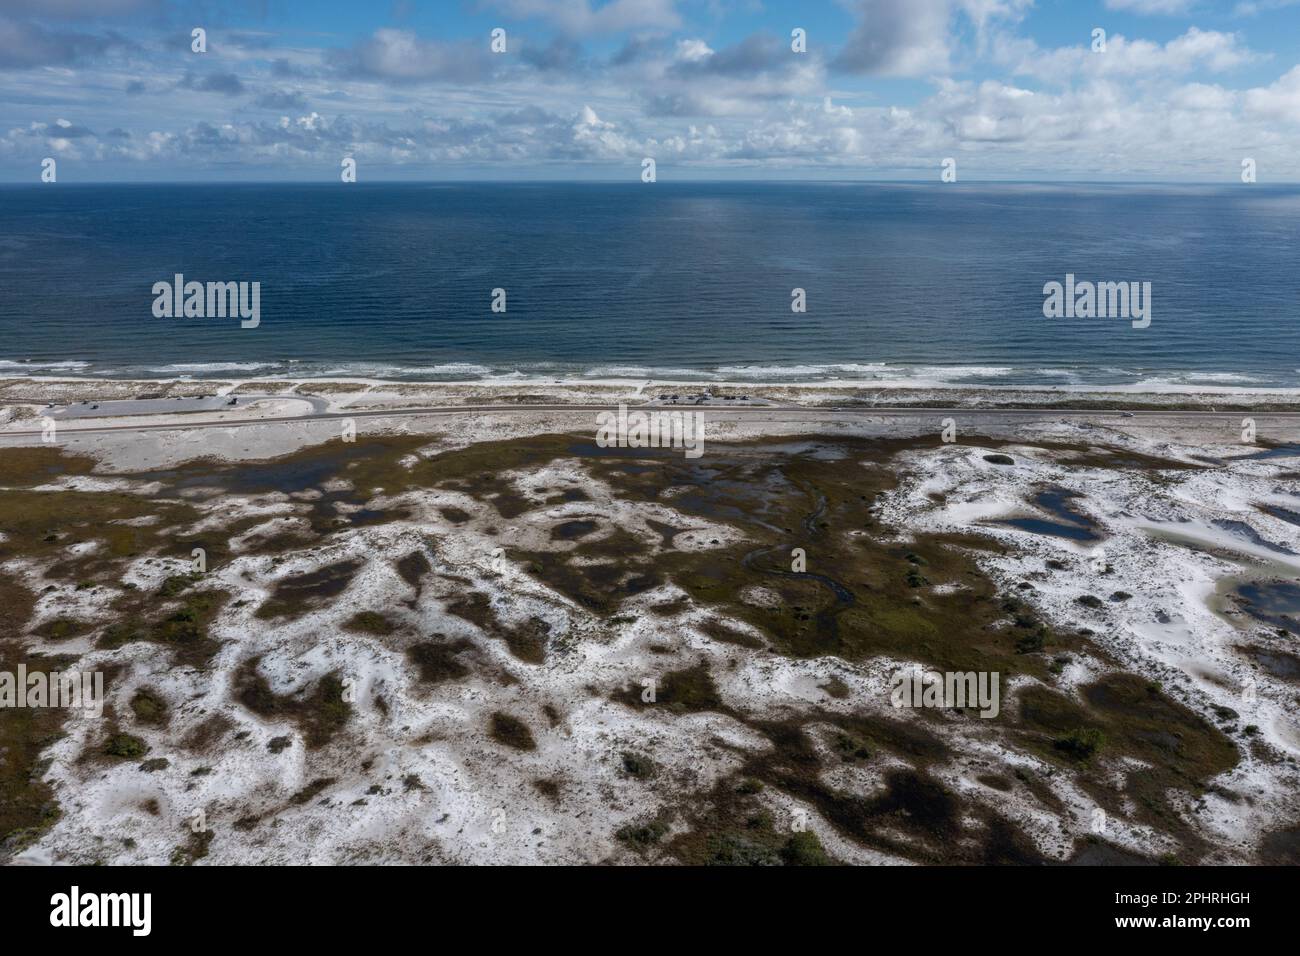 Une photo aérienne de la plage de sable blanc à Pensacola, Panhandle, Floride. Plage naturelle sauvage préservée, l'océan est calme, le ciel bleu est plein de nuages Banque D'Images